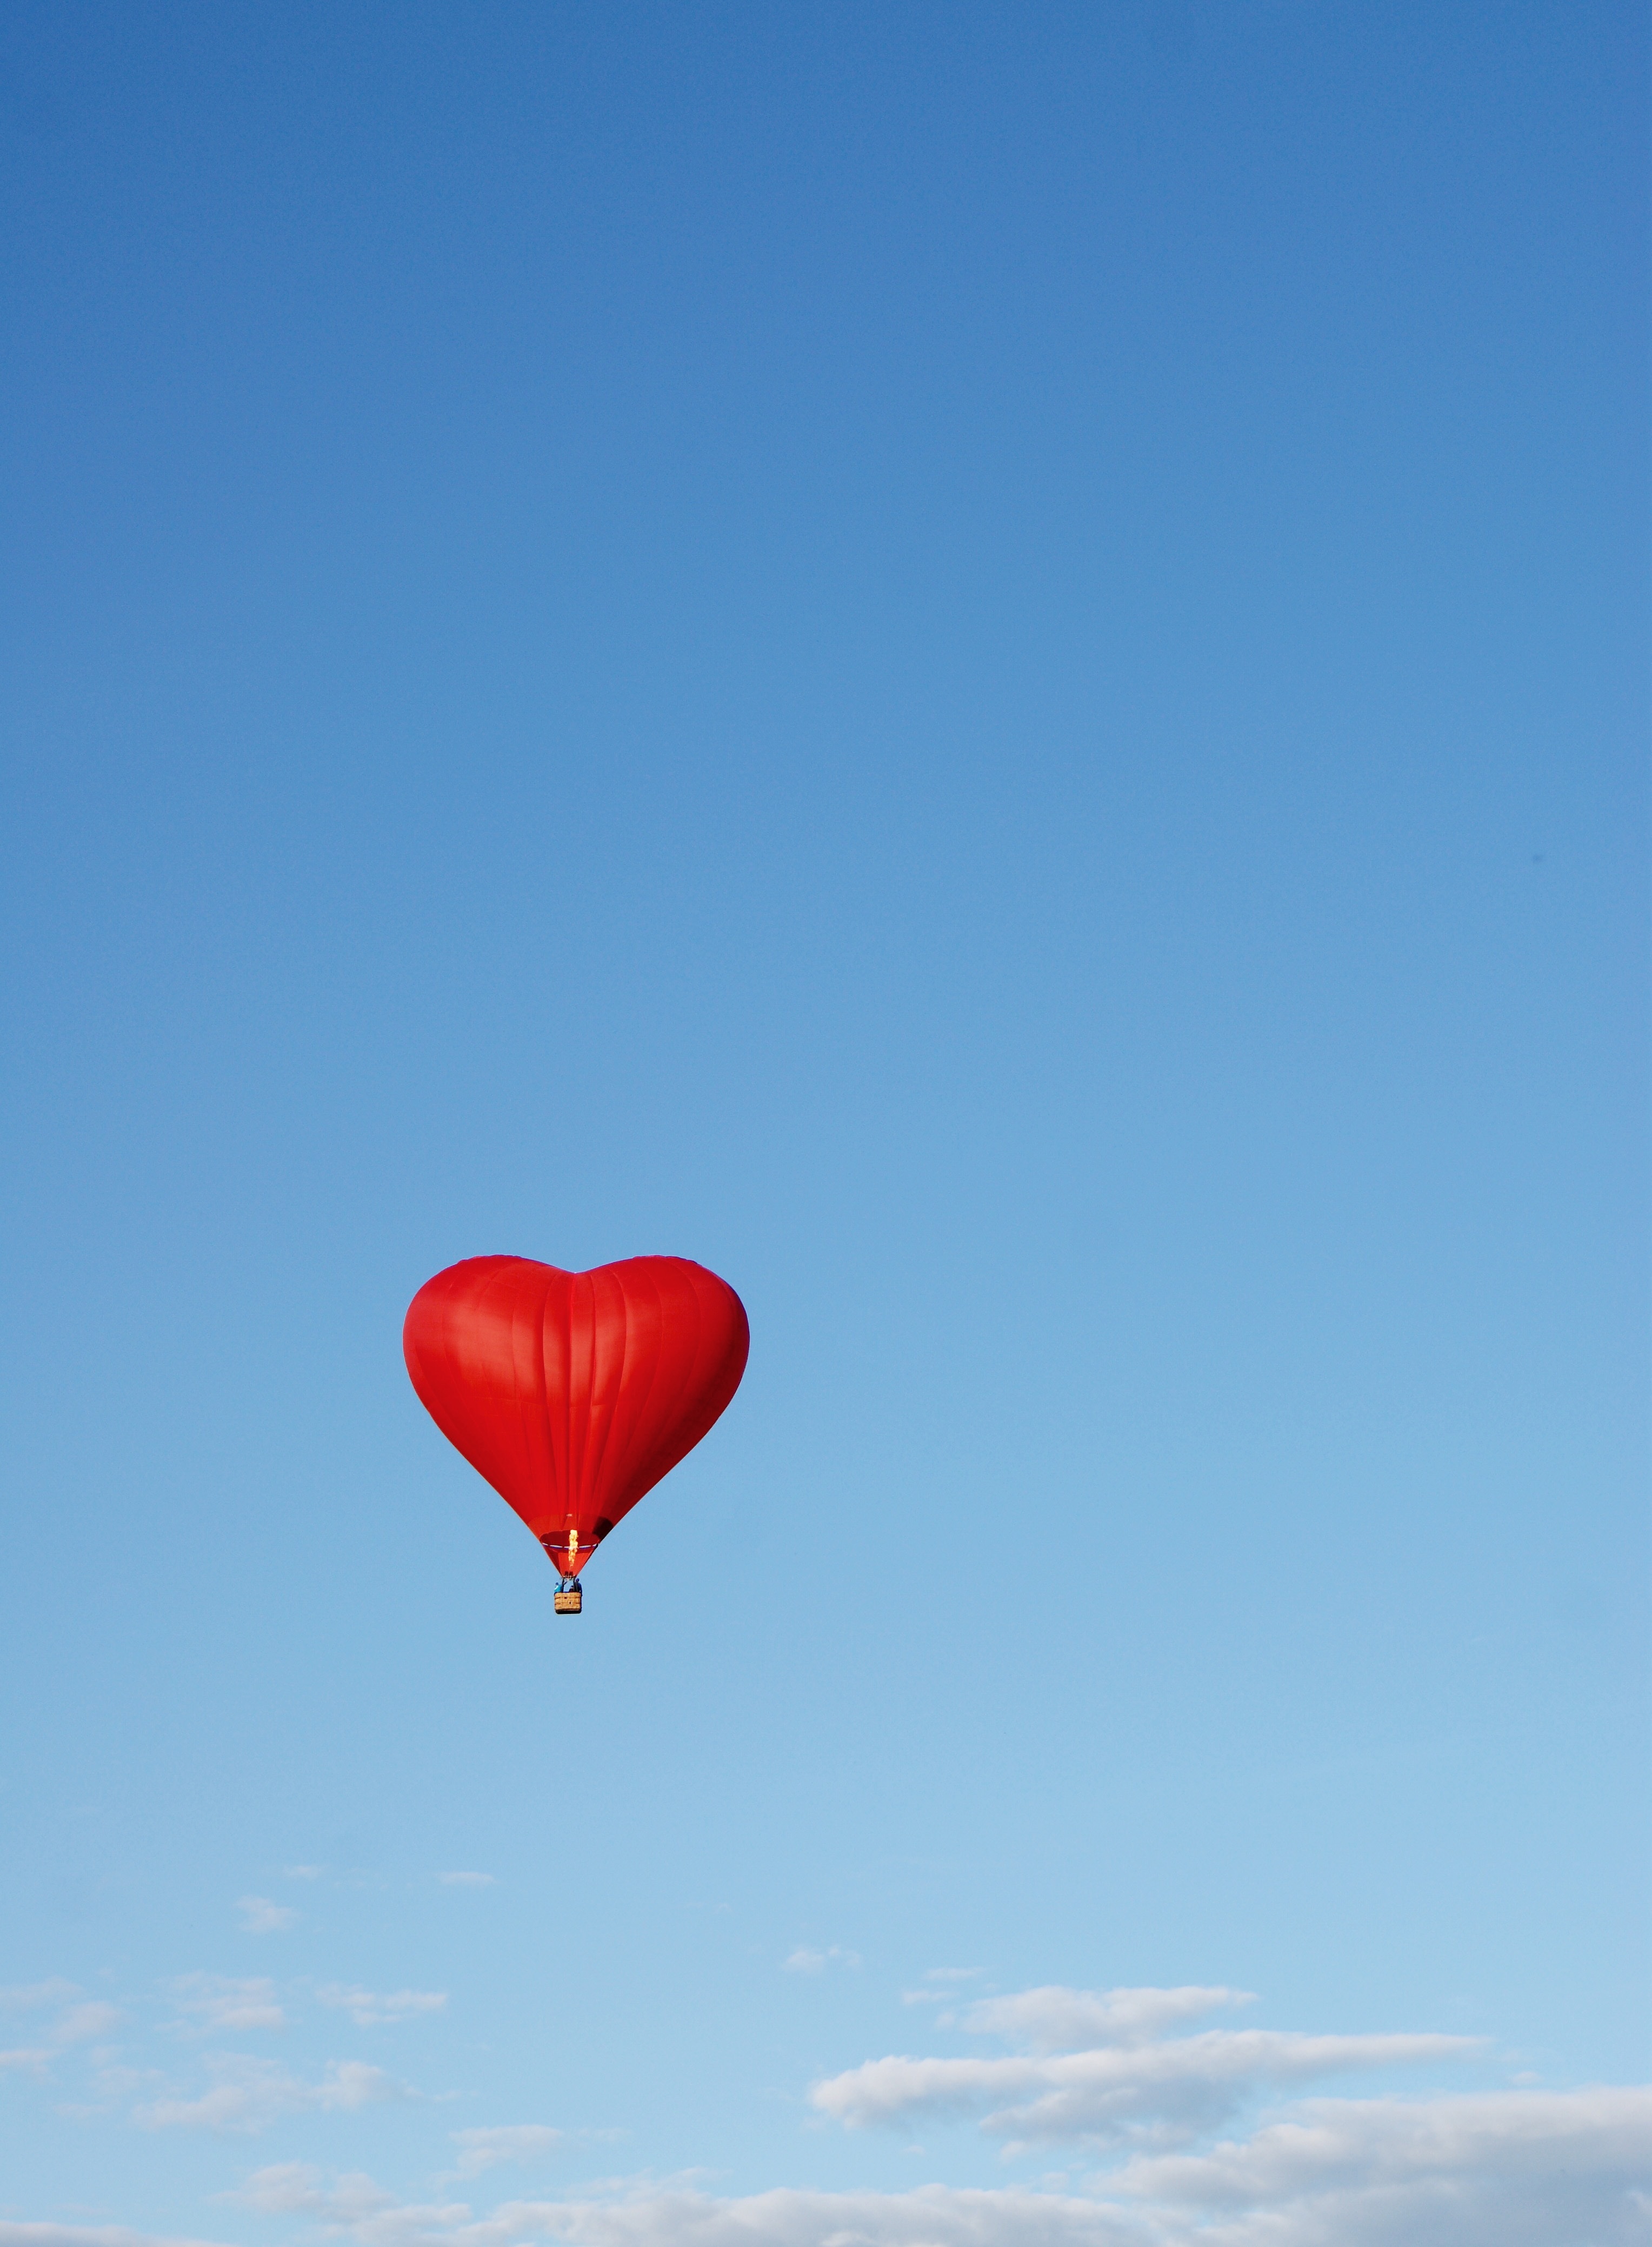 Обои с красным воздушным шаром в виде сердца